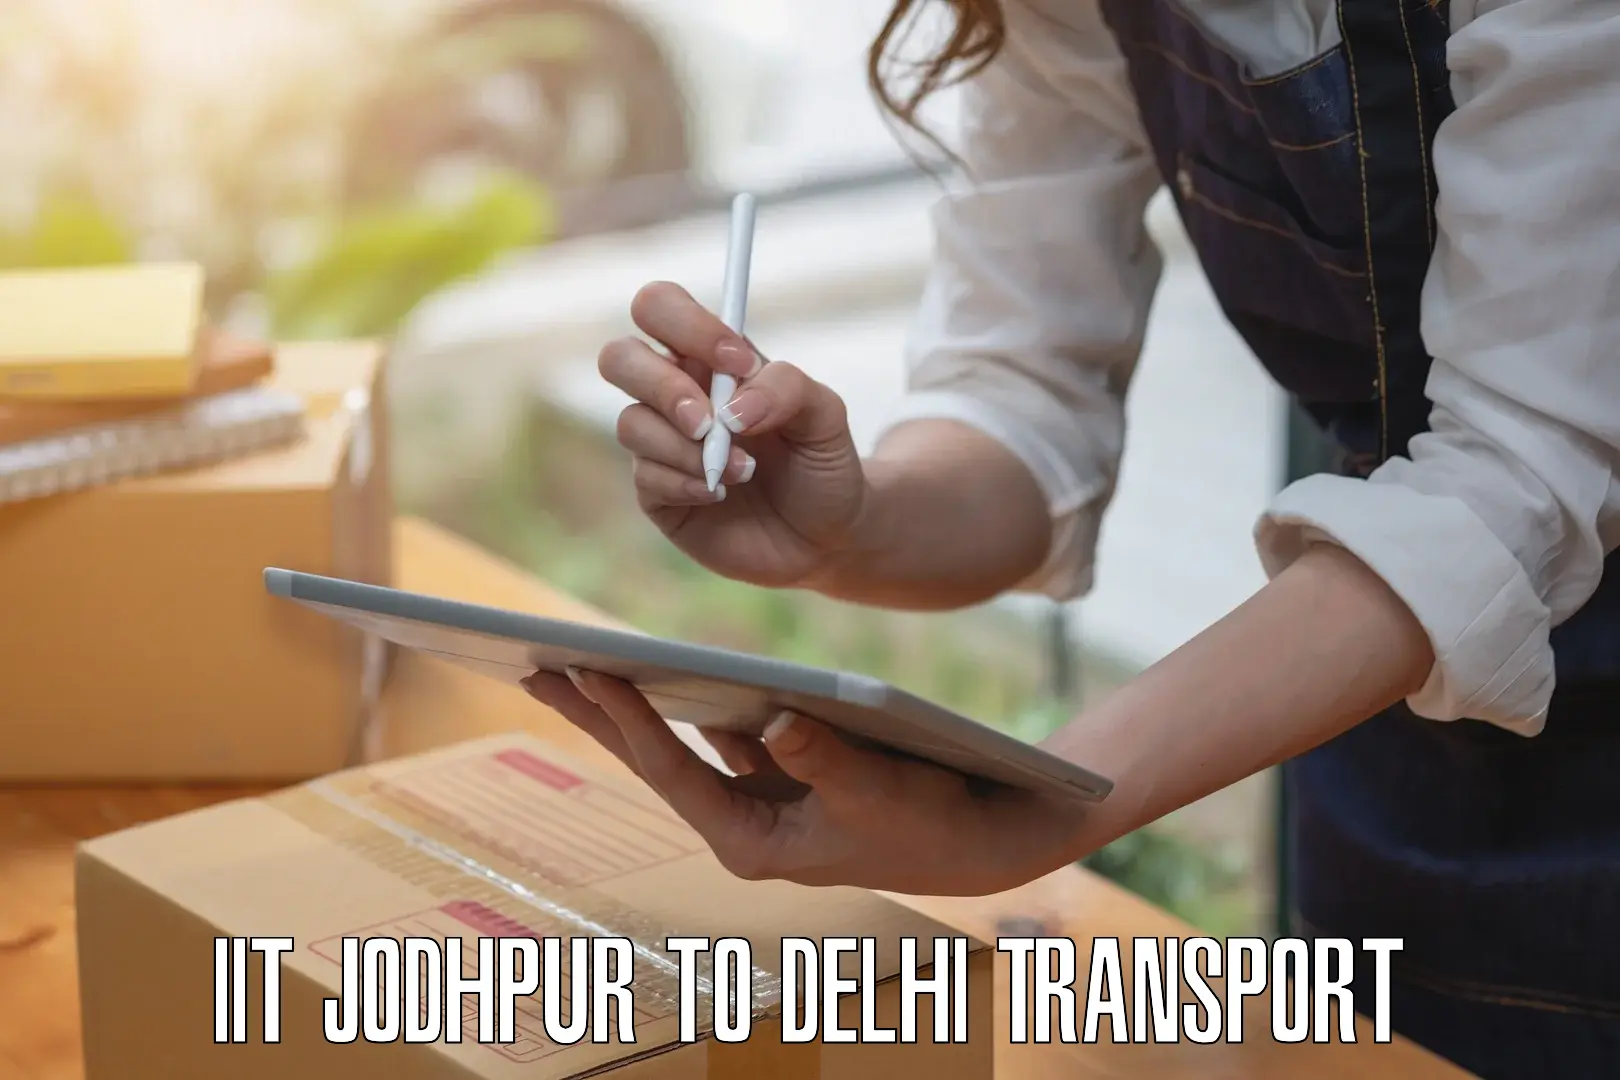 Nearest transport service in IIT Jodhpur to Lodhi Road